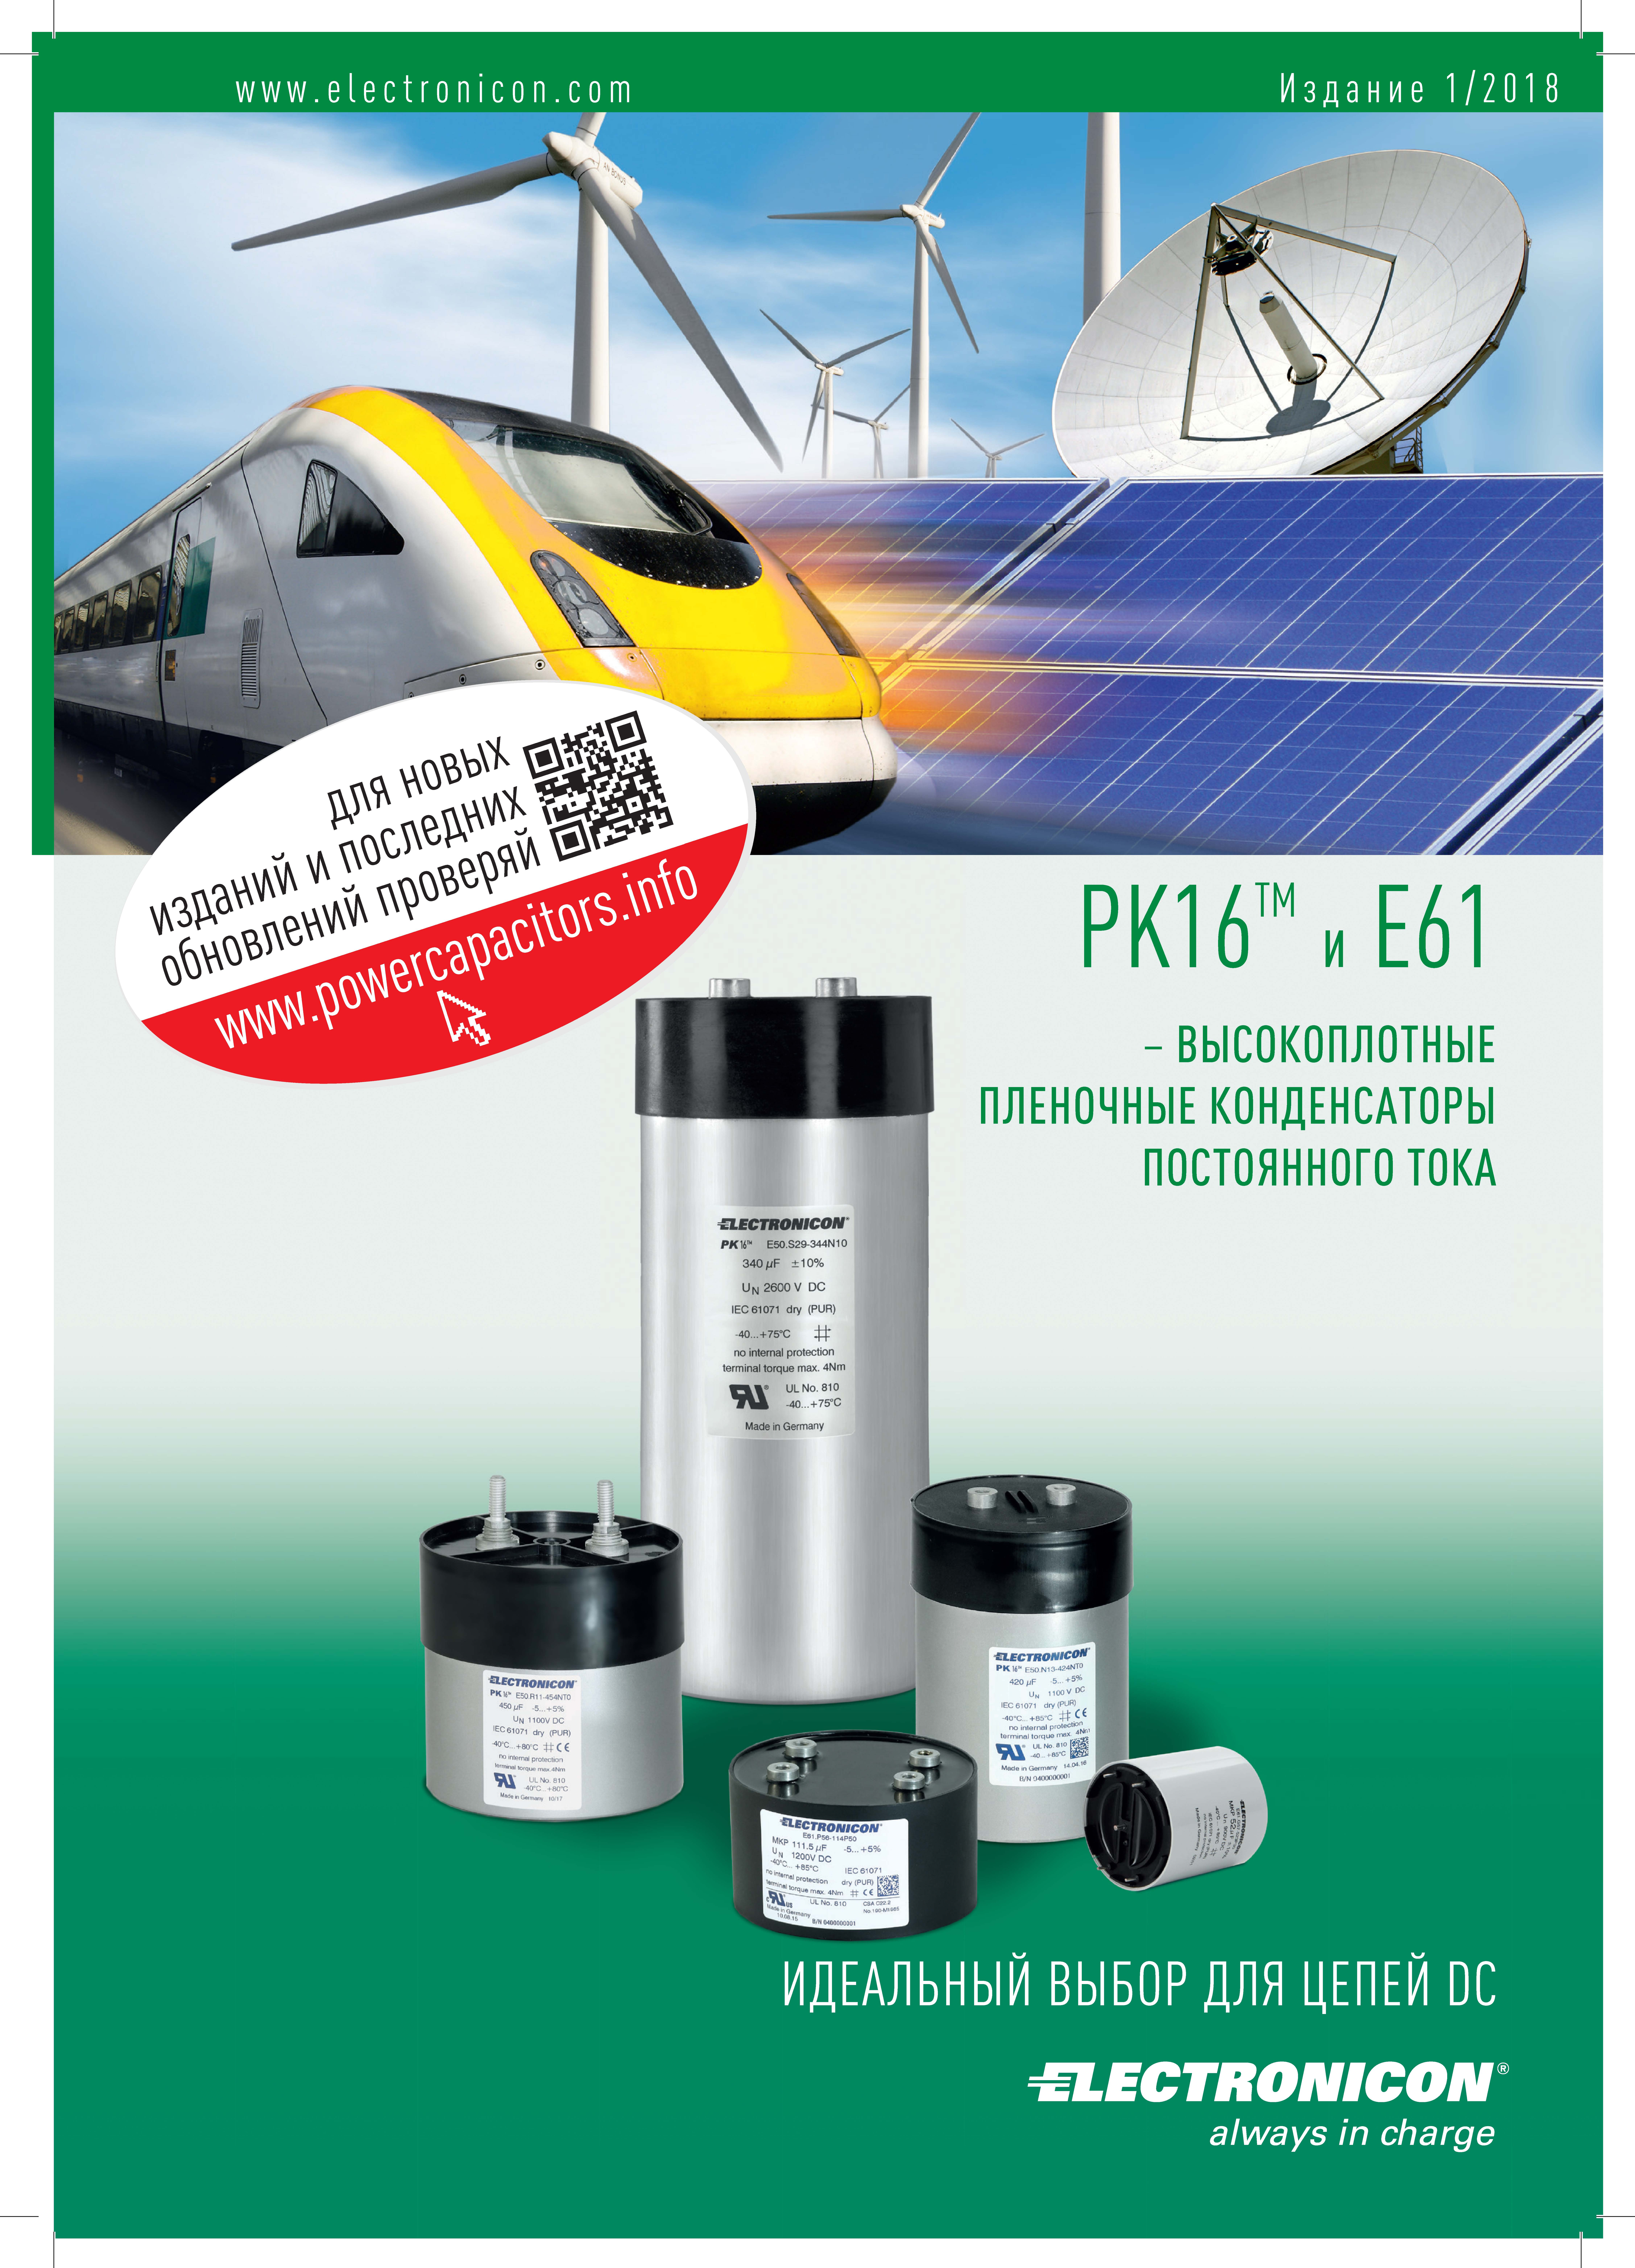 PK16 и E61 - высокоплотные пленочные конденсаторы постоянного тока